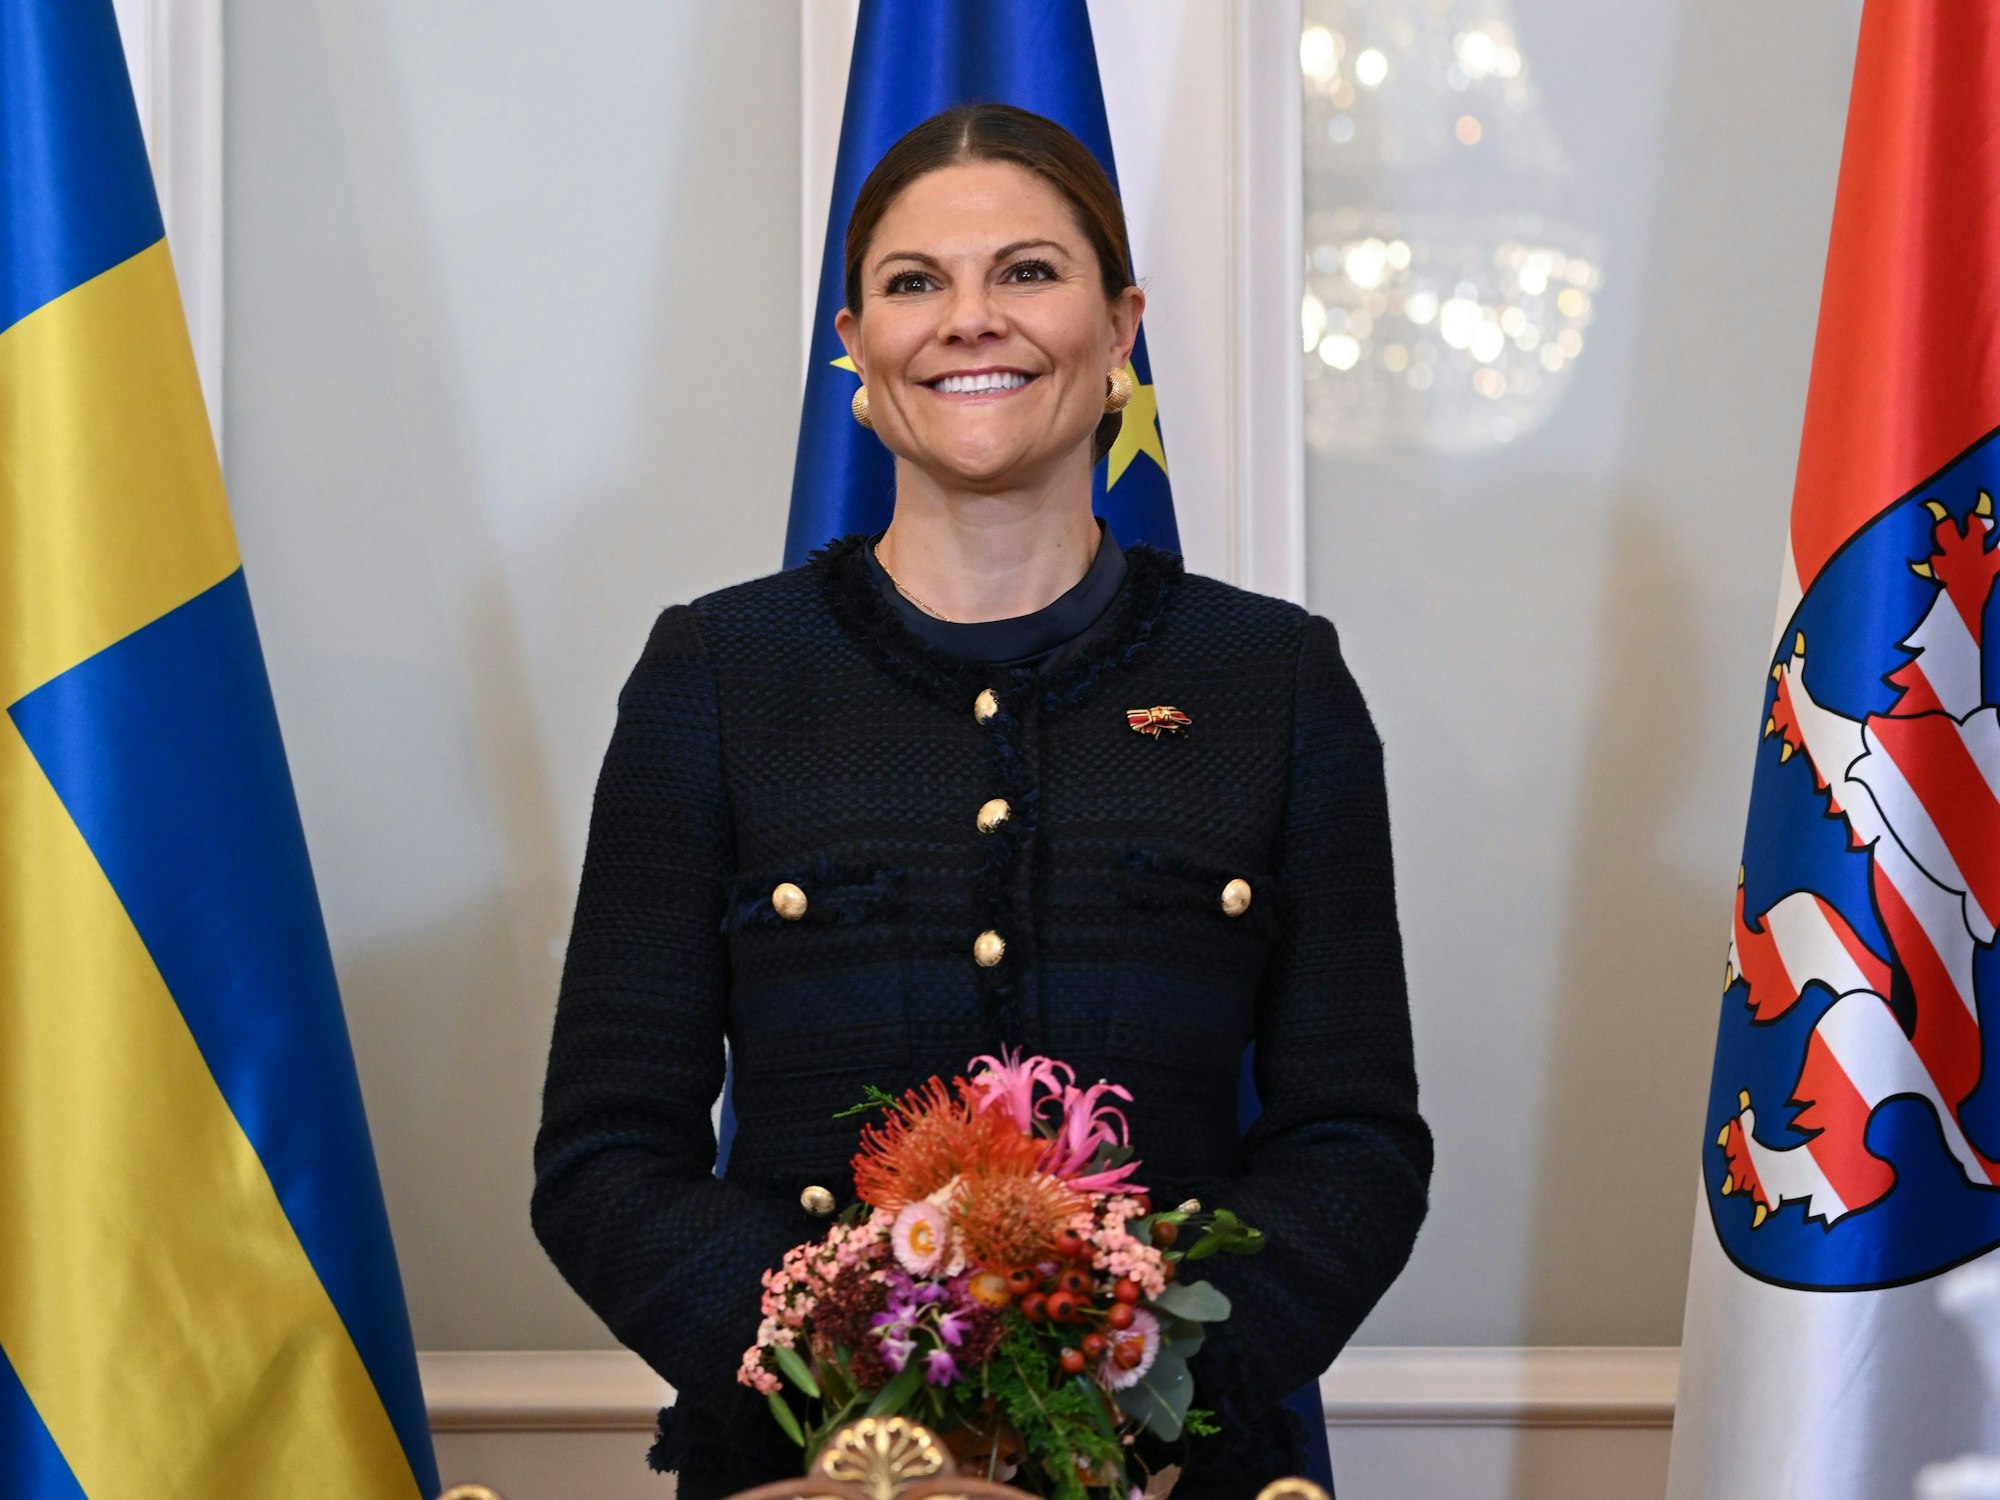 Kronprinzessin Victoria von Schweden steht bei ihrer Ankunft in der Hessischen Staatskanzlei vor den Flaggen Schwedens (l-r), Europas und Hessens.